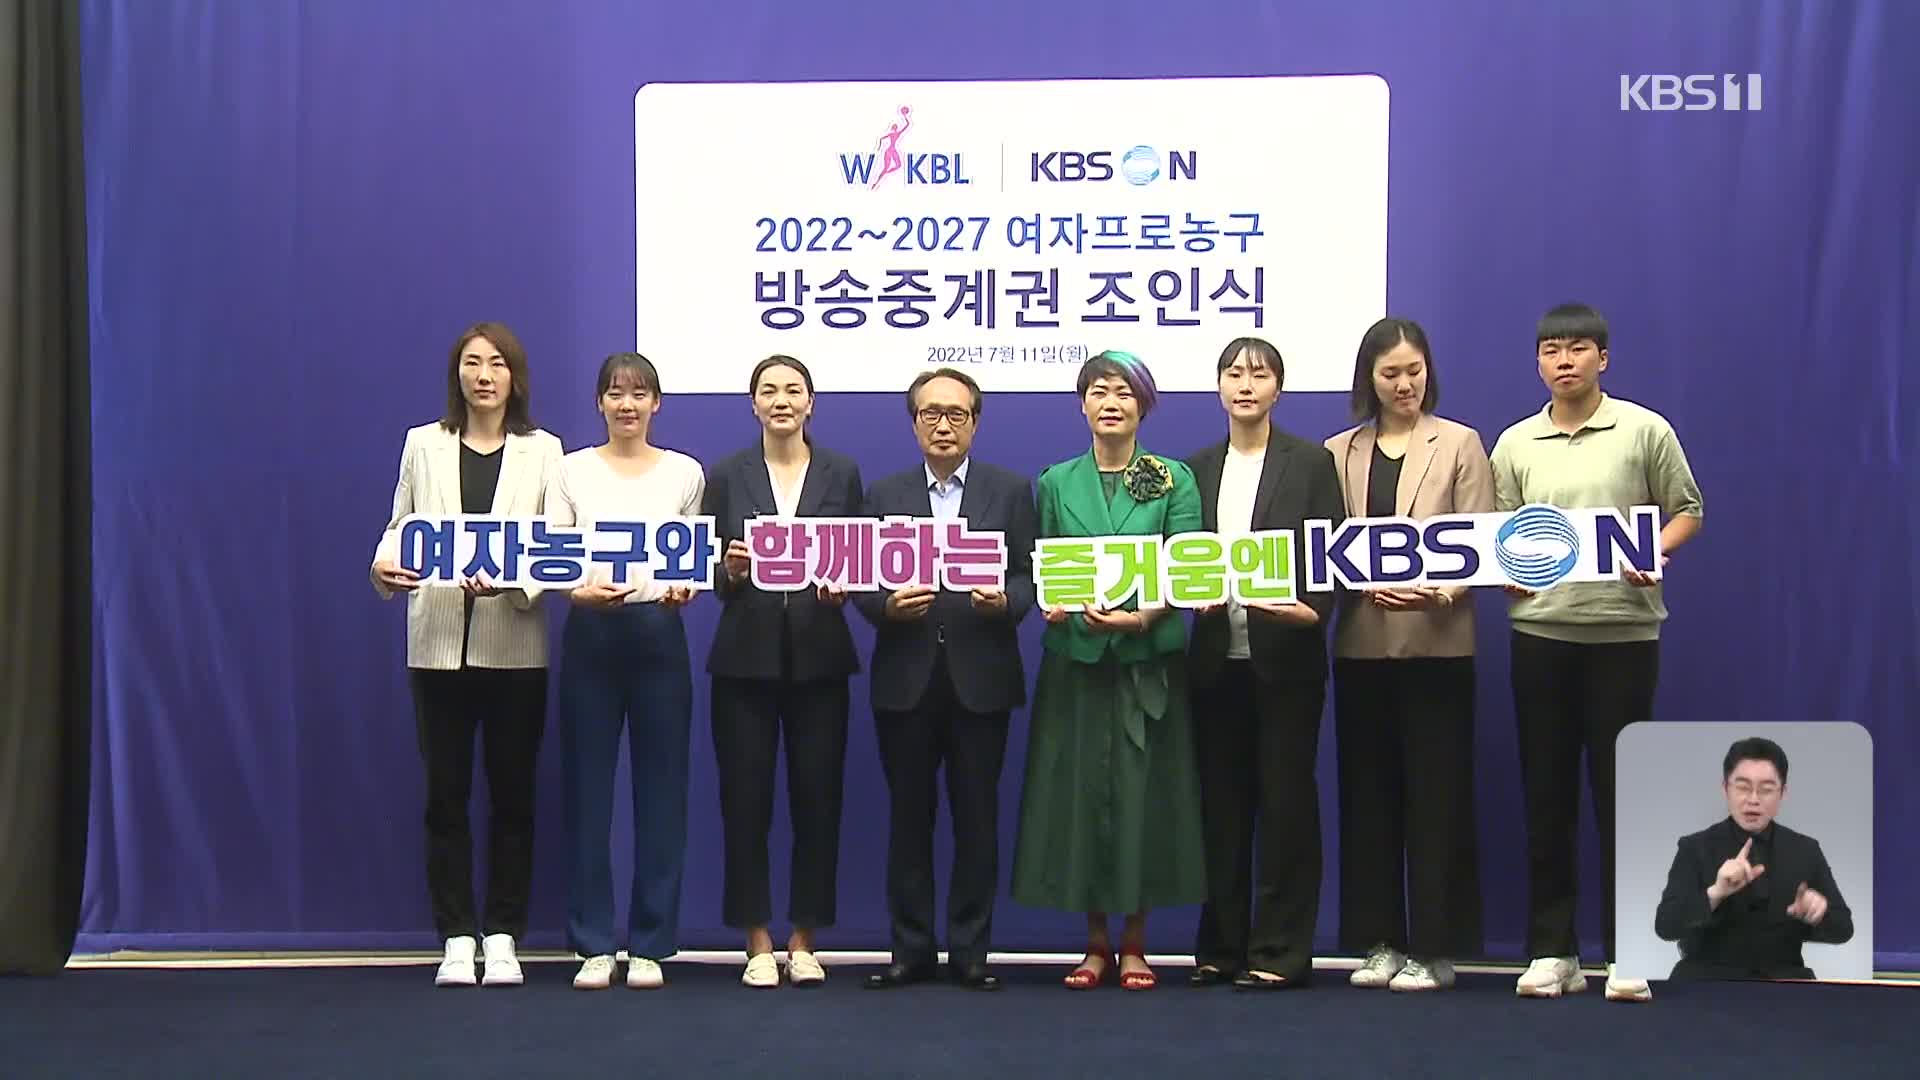 여자 프로농구, KBS N과 5년 방송 중계권 연장 계약